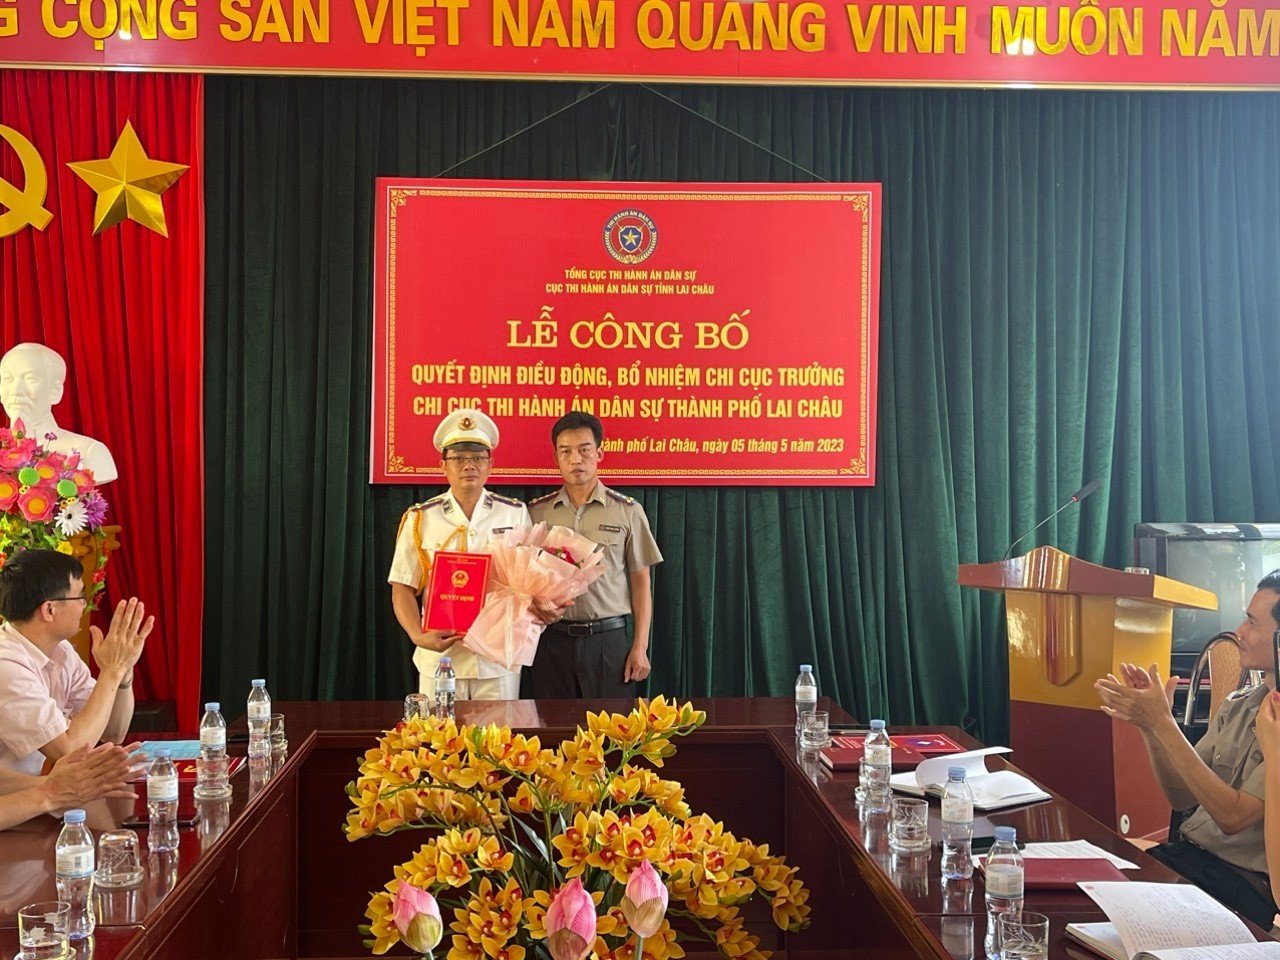 Cục Thi hành án dân sự tỉnh Lai Châu tổ chức Lễ công bố Quyết định bổ nhiệm chức vụ Chi cục trưởng Chi cục THADS thành phố Lai Châu, tỉnh Lai Châu